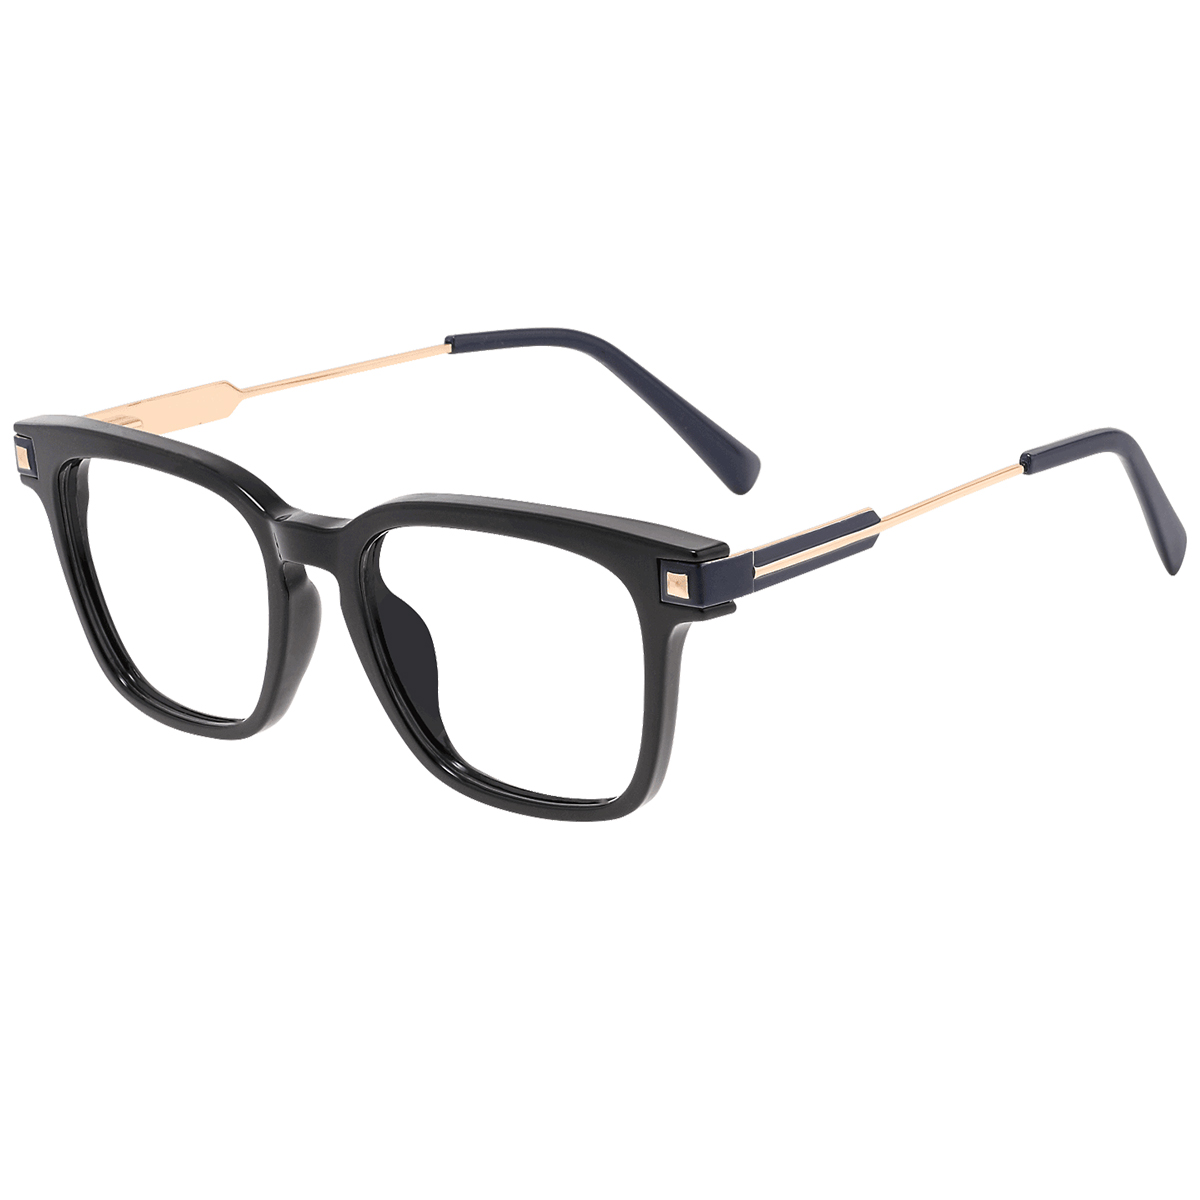 Nelson - Square Black Reading Glasses for Men